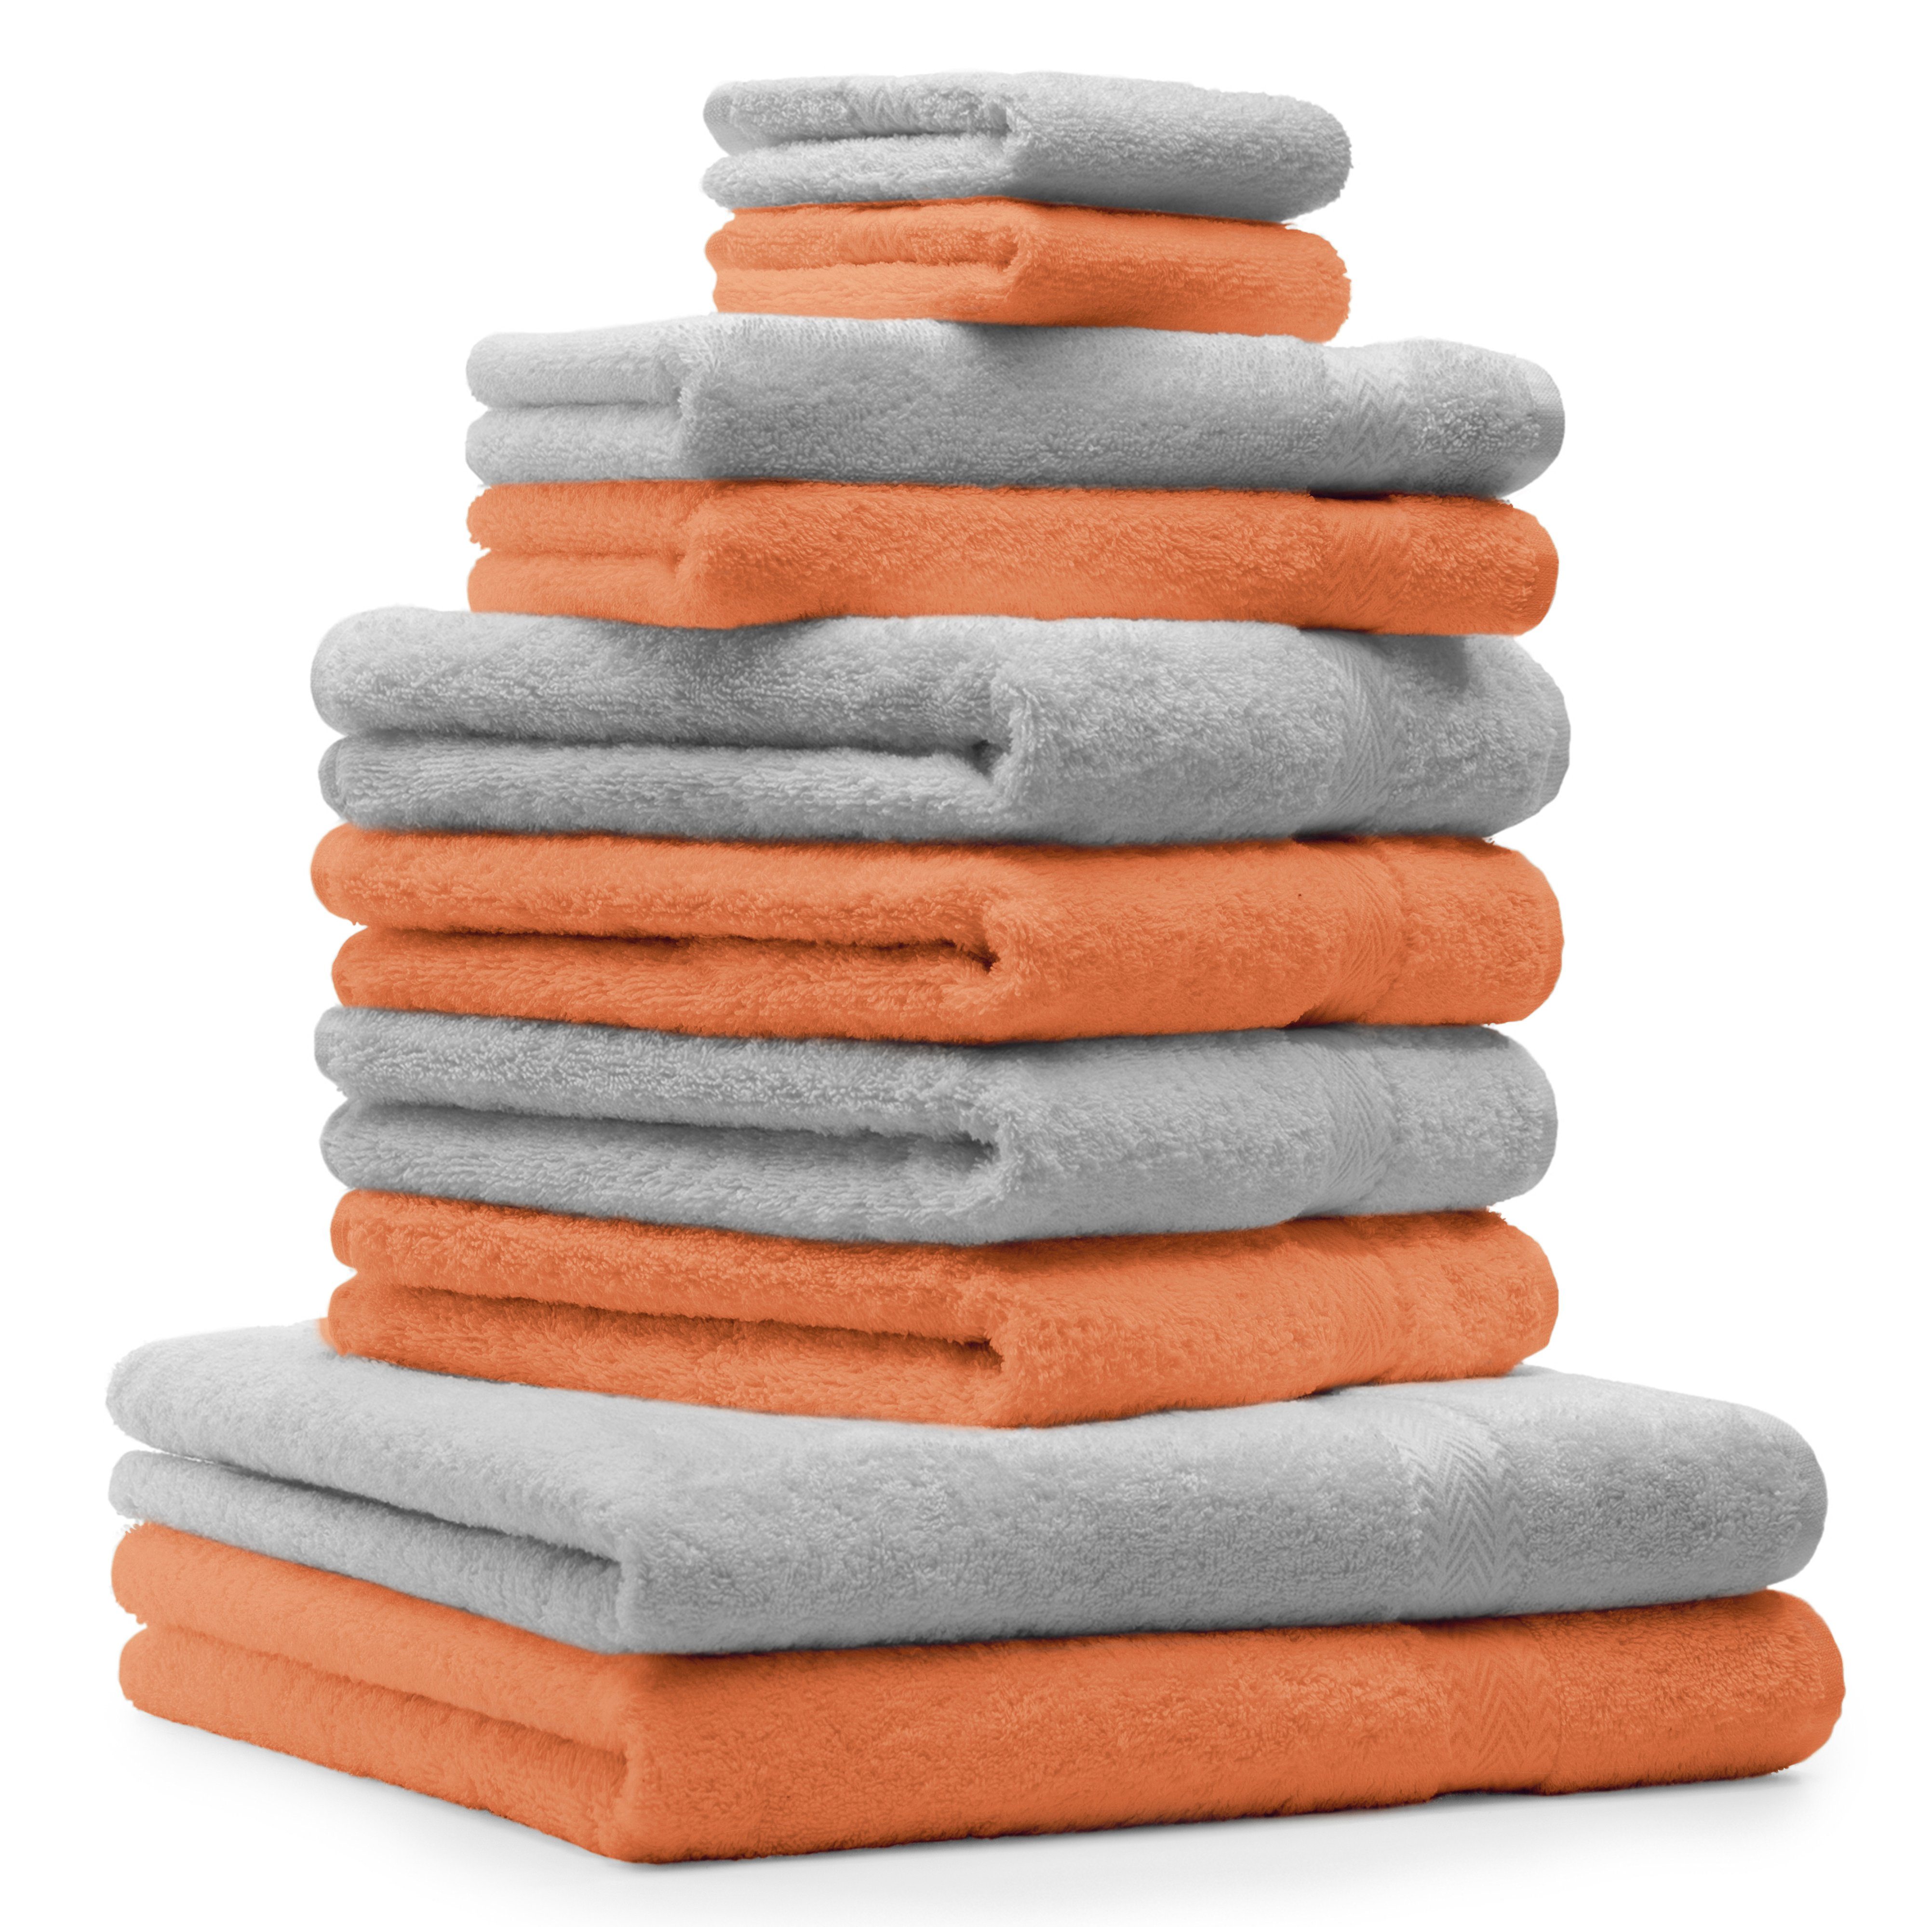 Betz Handtuch Set 10-TLG. Handtuch-Set Premium Farbe Orange & Silbergrau, 100% Baumwolle, (10-tlg)